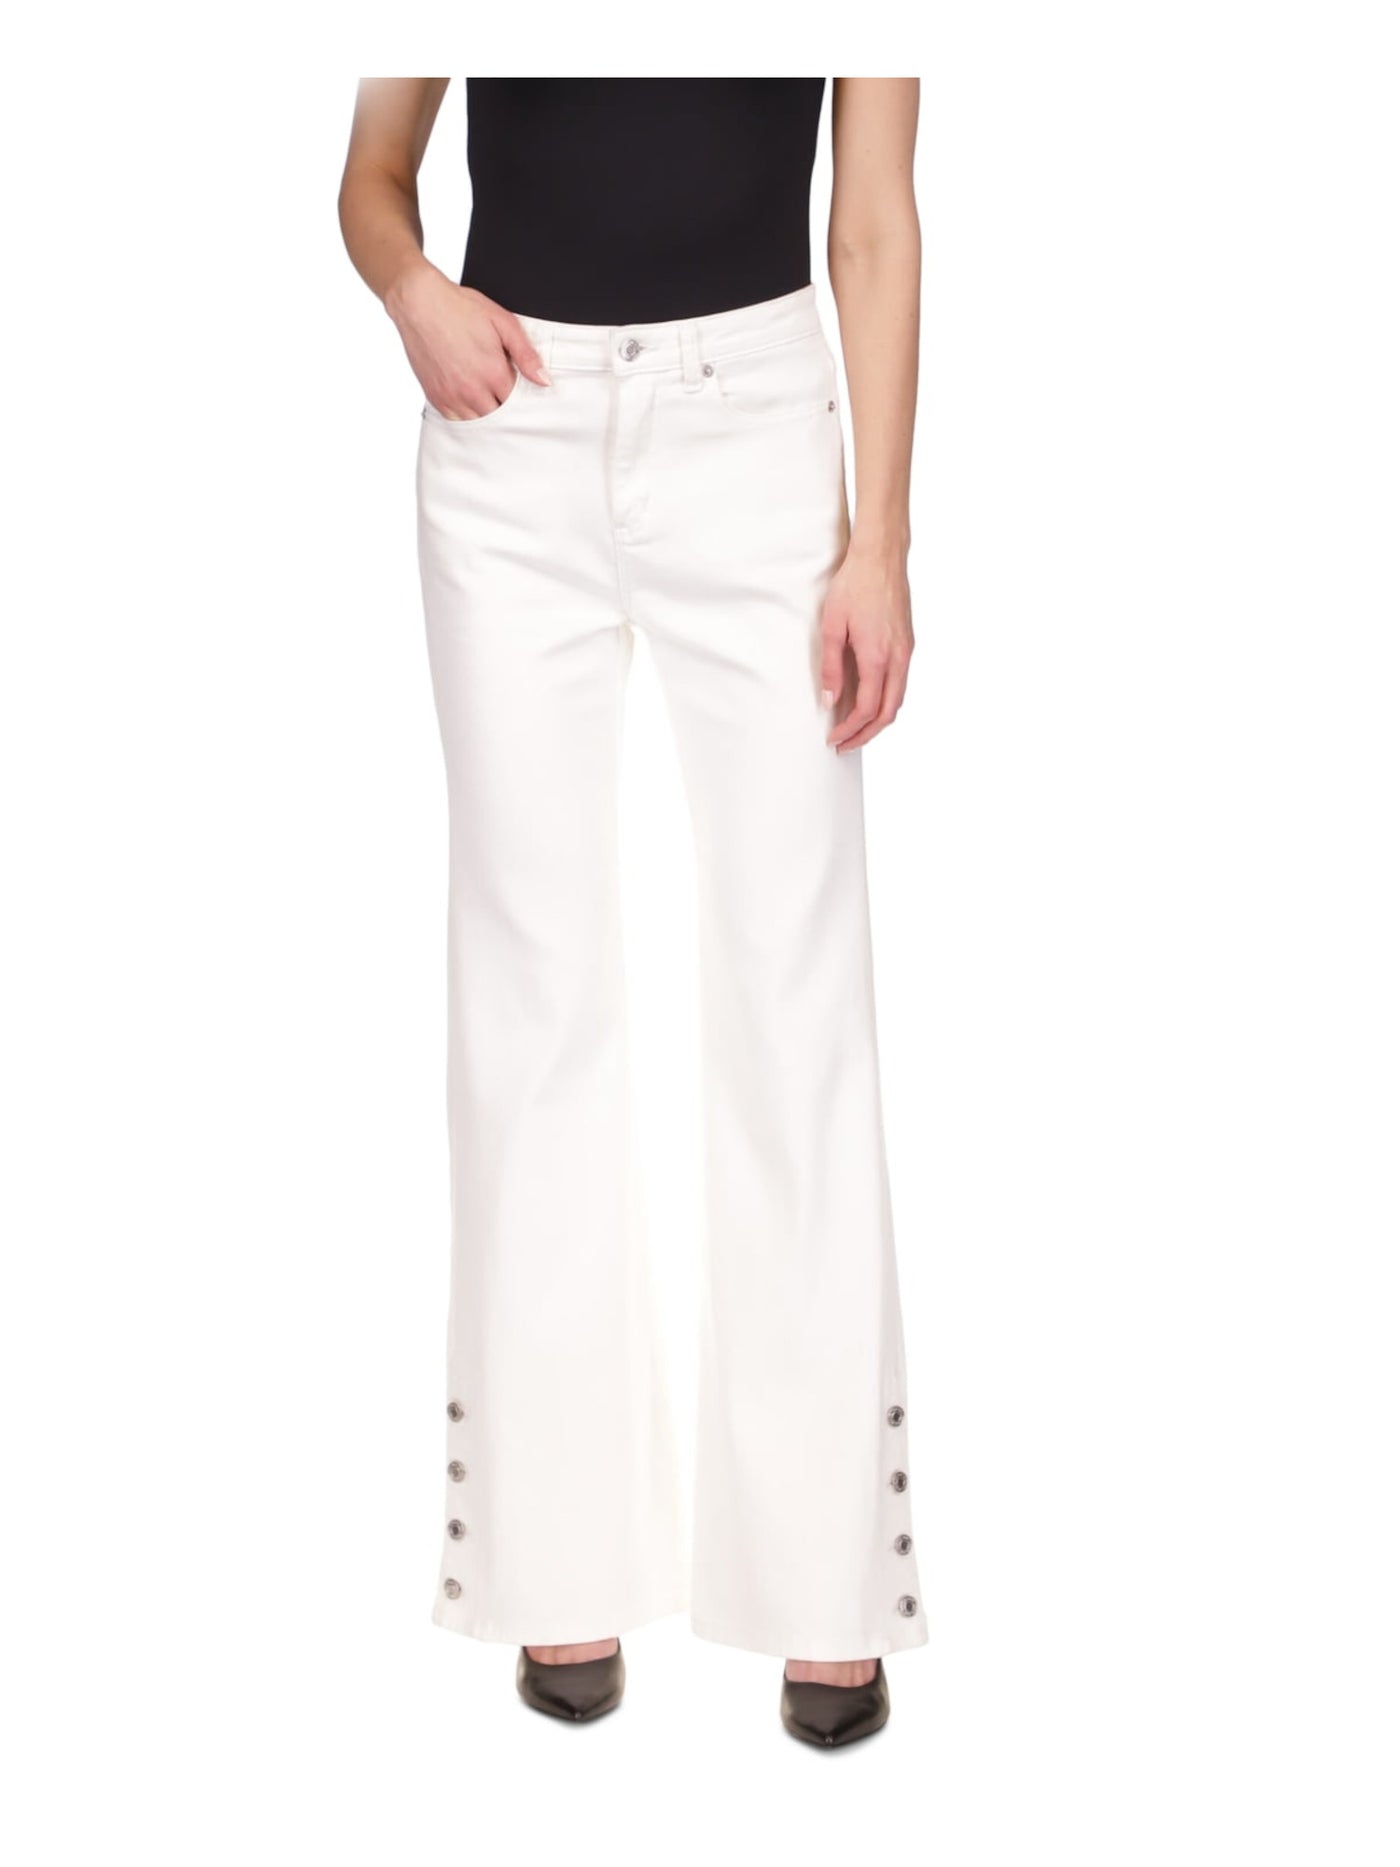 MICHAEL MICHAEL KORS Womens White Zippered Pocketed Button Detail Cuffs High Waist Jeans 14